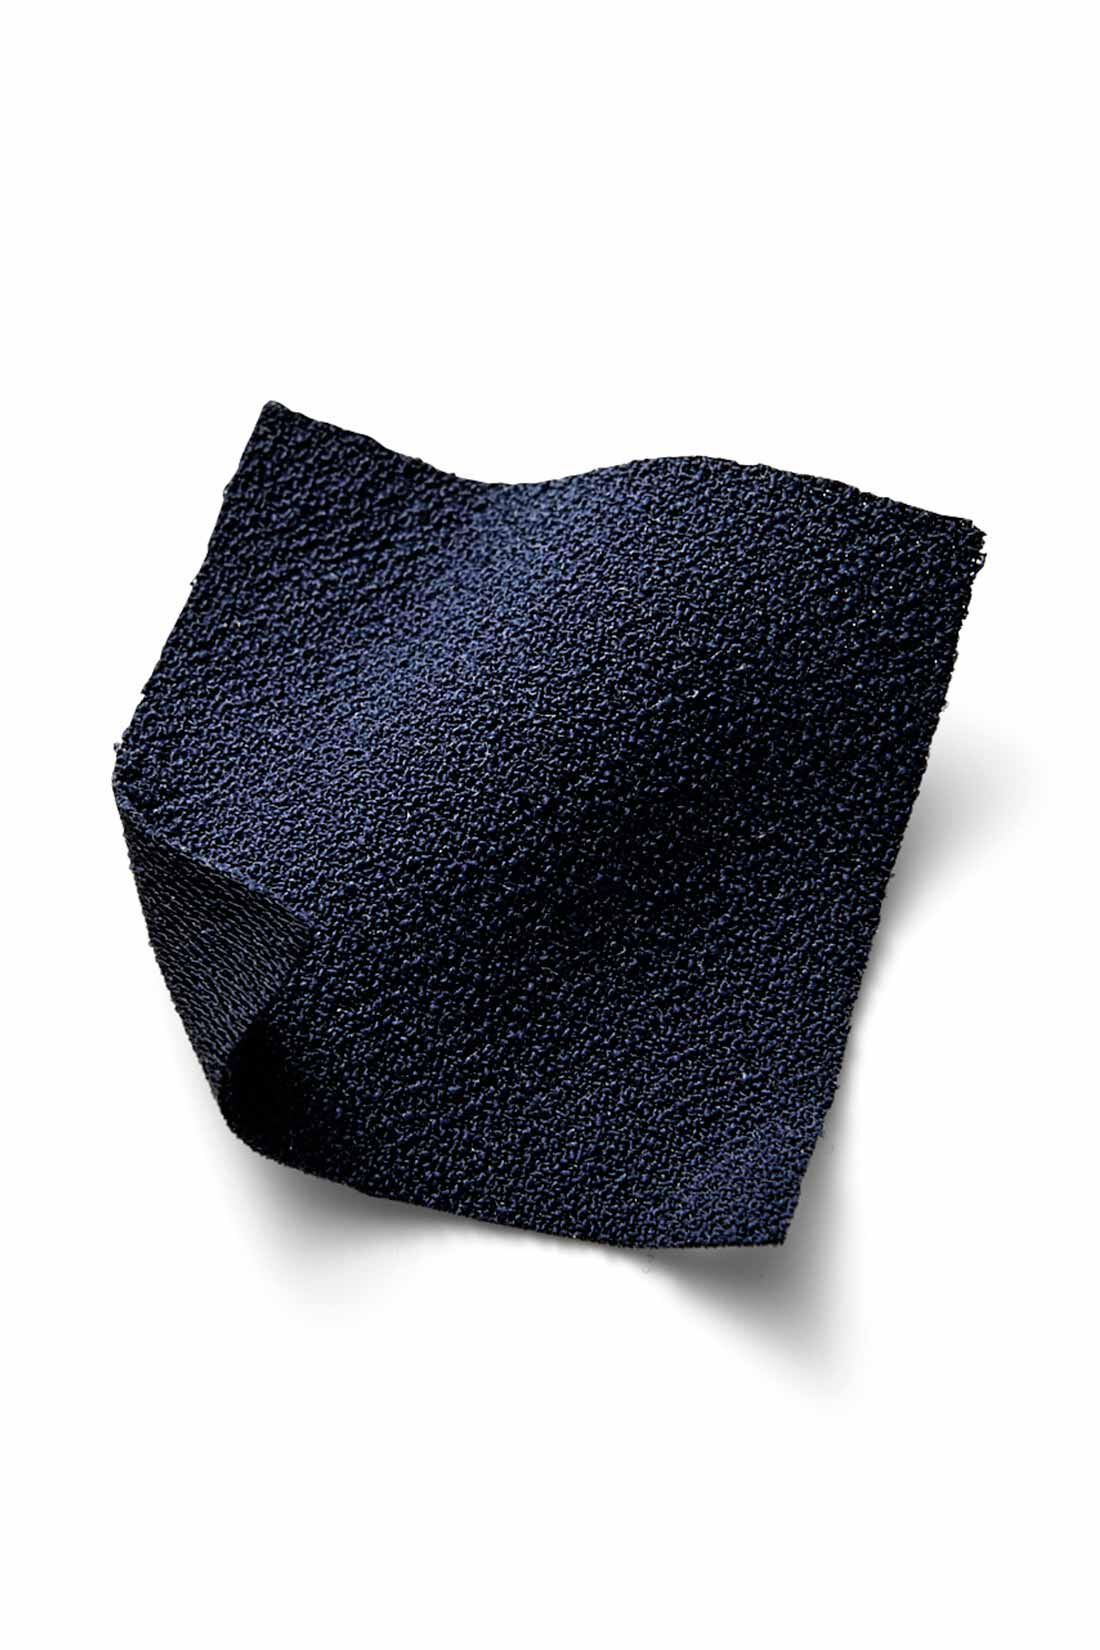 イディット|牧野紗弥さん×IEDIT[イディット]　マルチに使える万能ネイビーのスカートセットアップ|上質感のある布はく素材ながら、伸びやかできゅうくつ感のないらくな着心地。